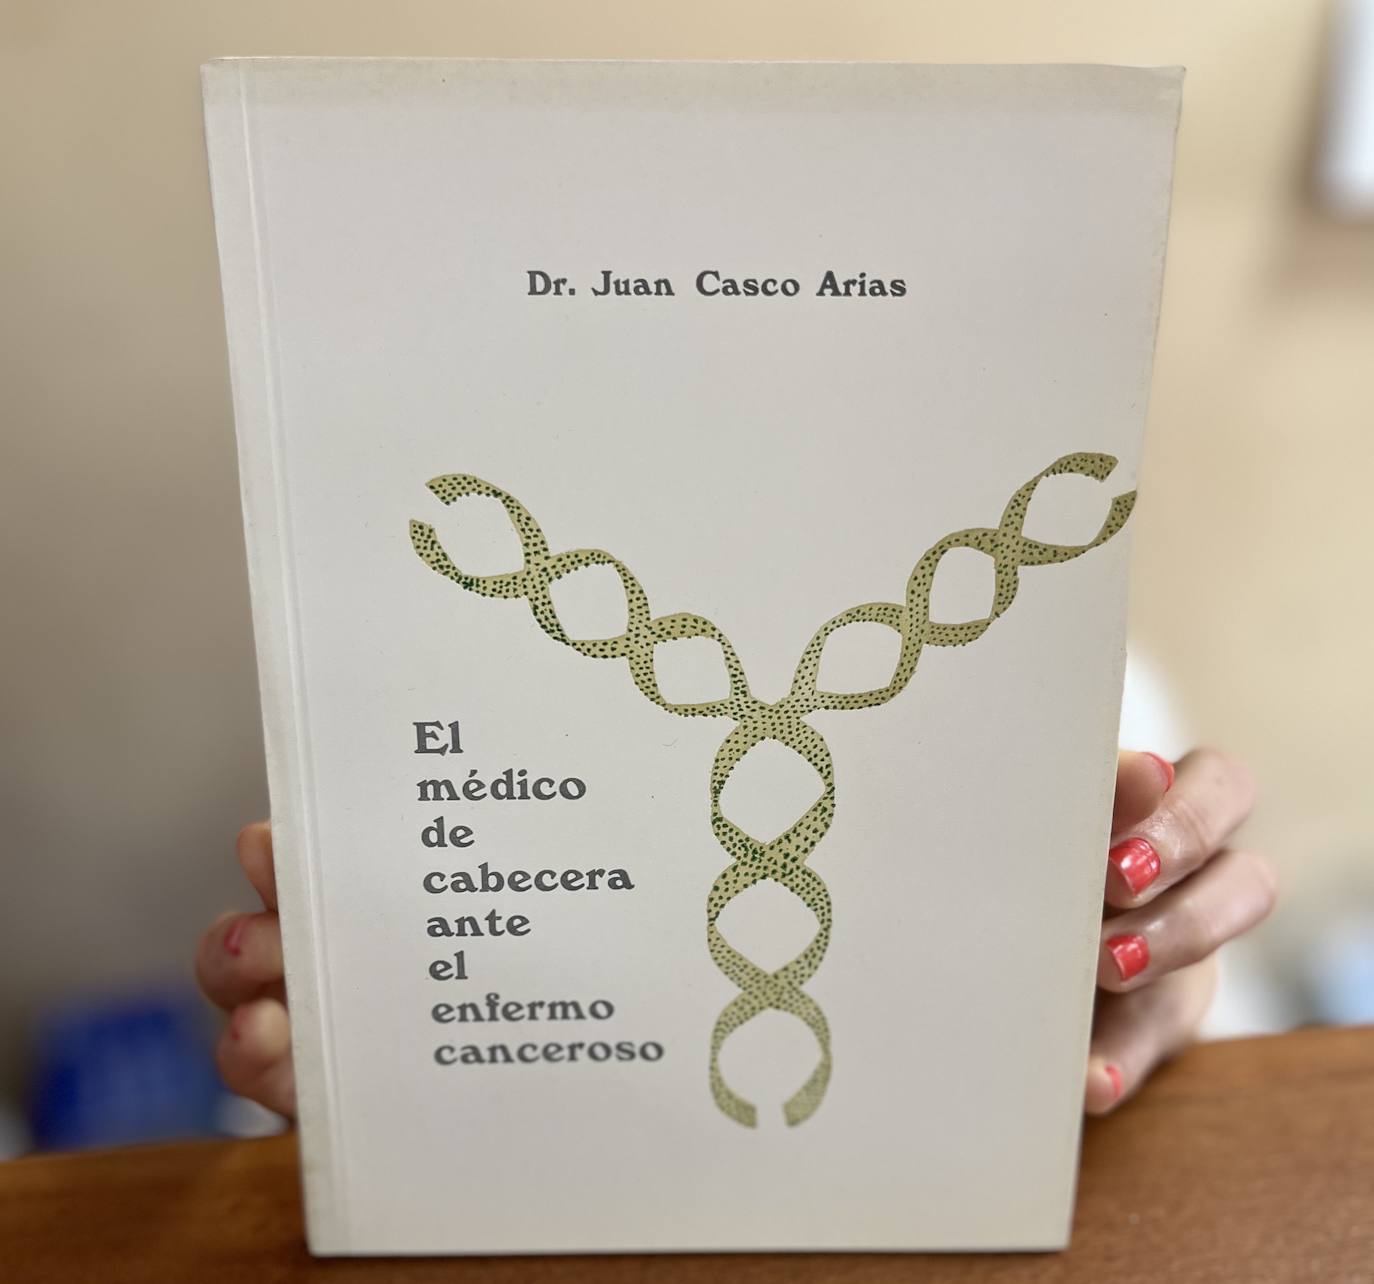 Mañana se entregarán ejemplares del libro escrito por el médico, Juan Casco